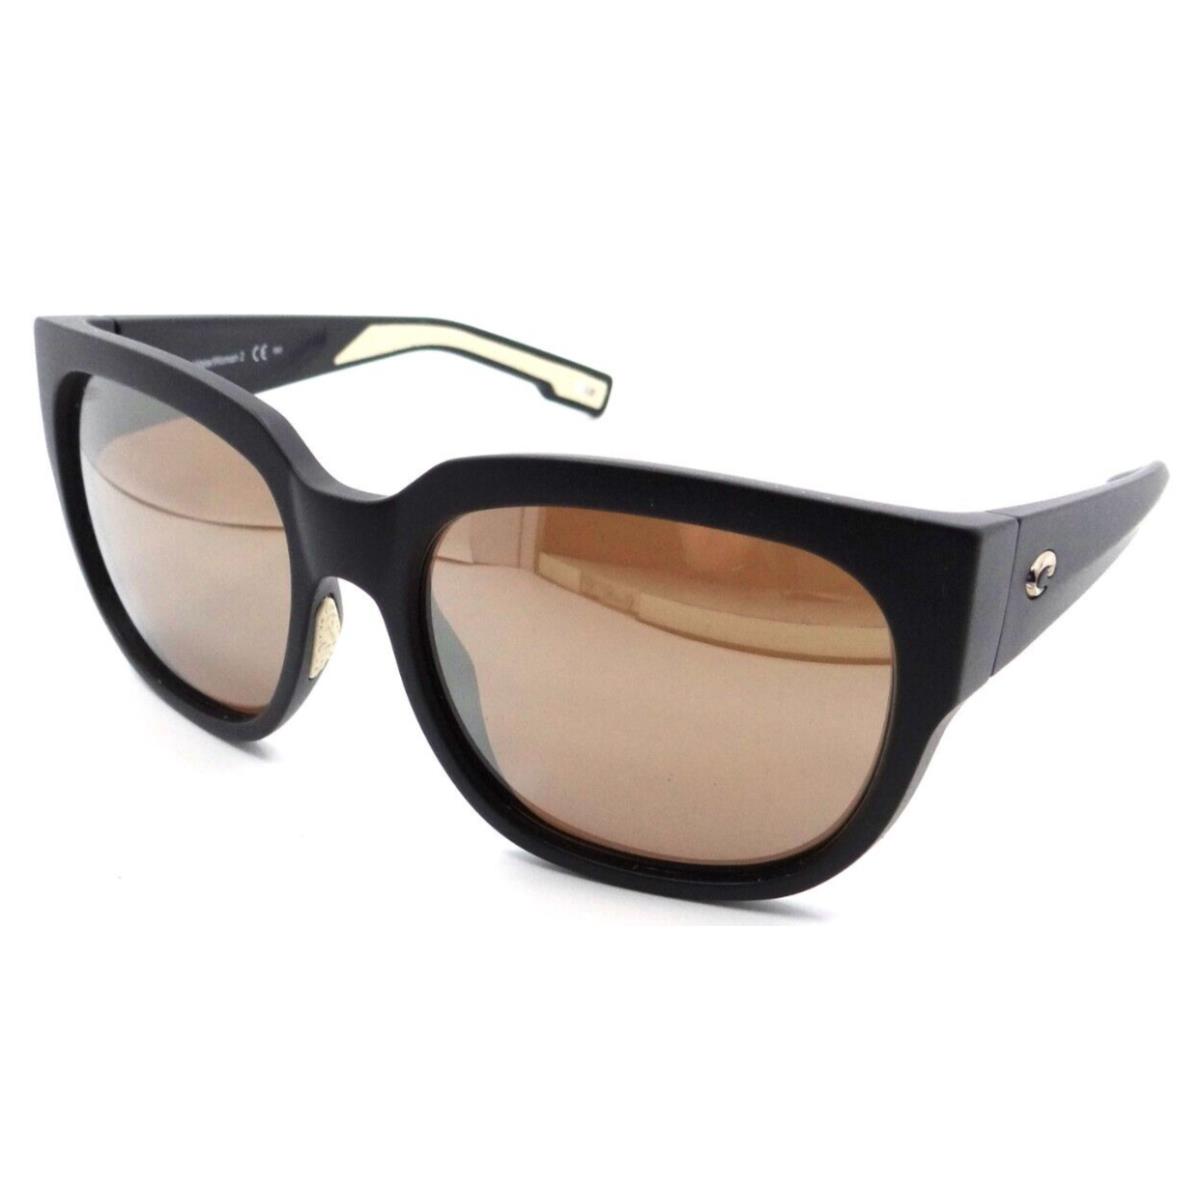 Costa Del Mar Sunglasses Waterwoman 2 Matte Black / Copper Silver Mirror 580G - Frame: